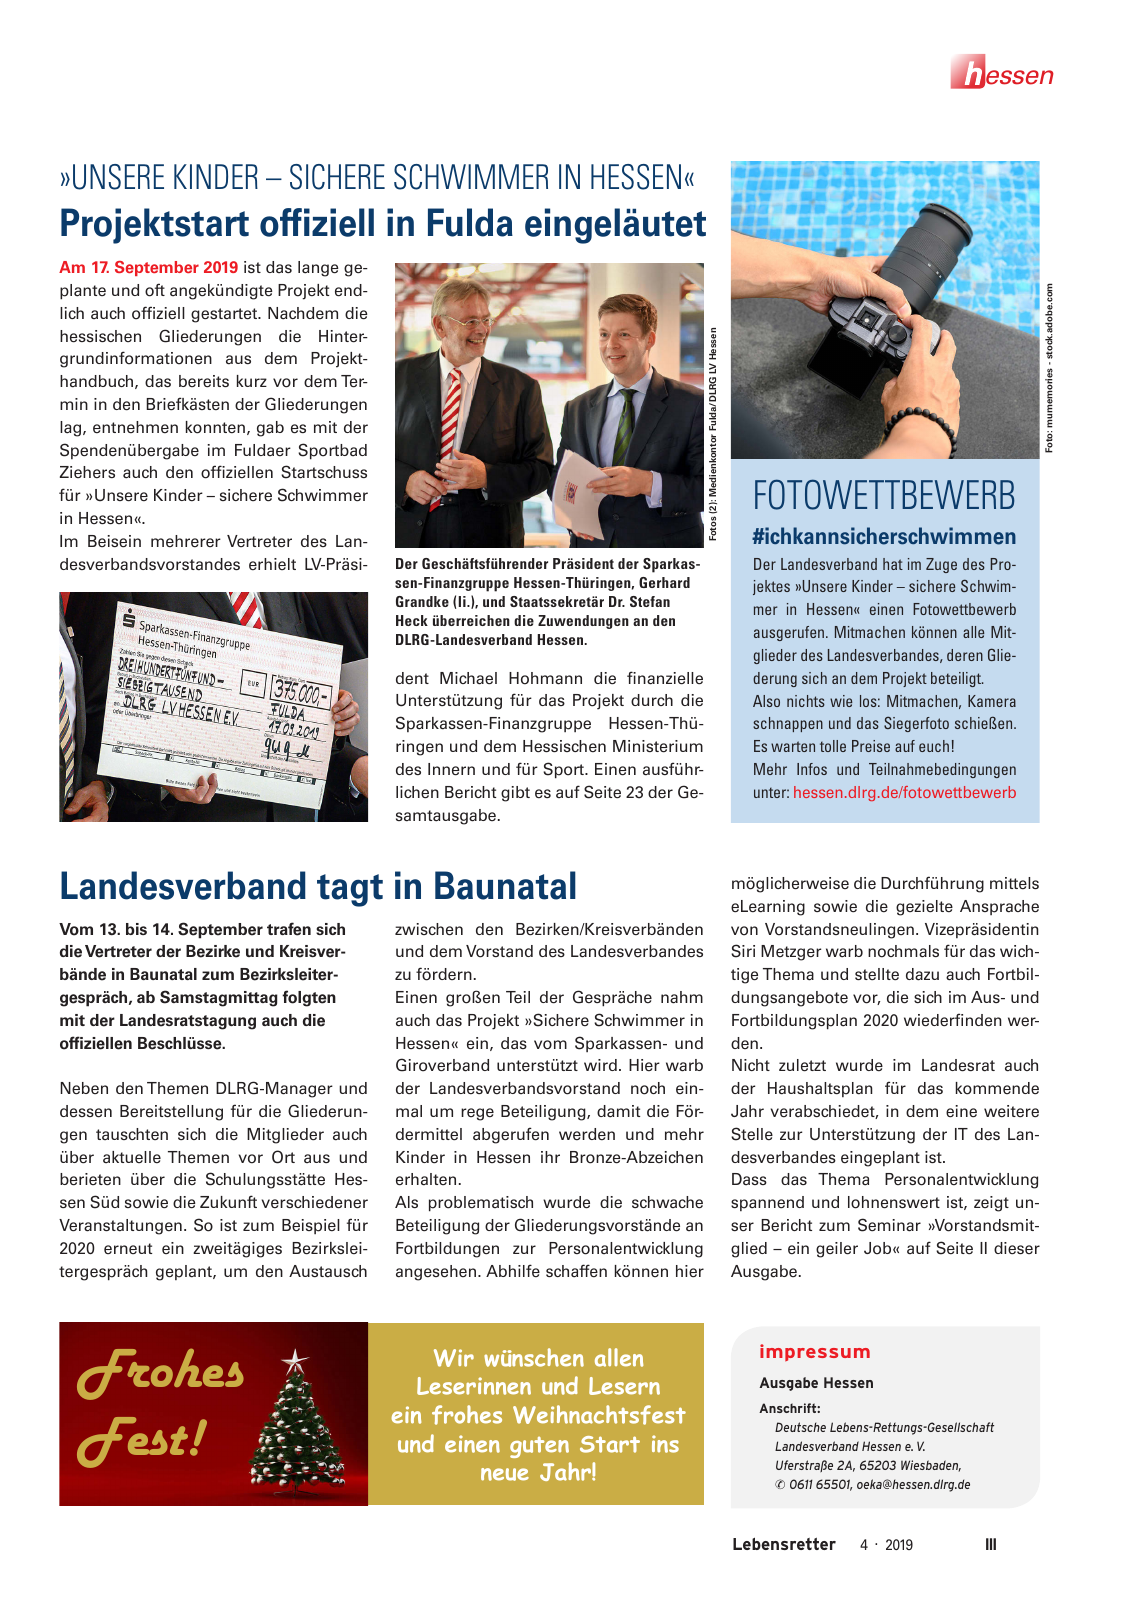 Vorschau Lebensretter 4/2019 -  Hessen Regionalausgabe Seite 5